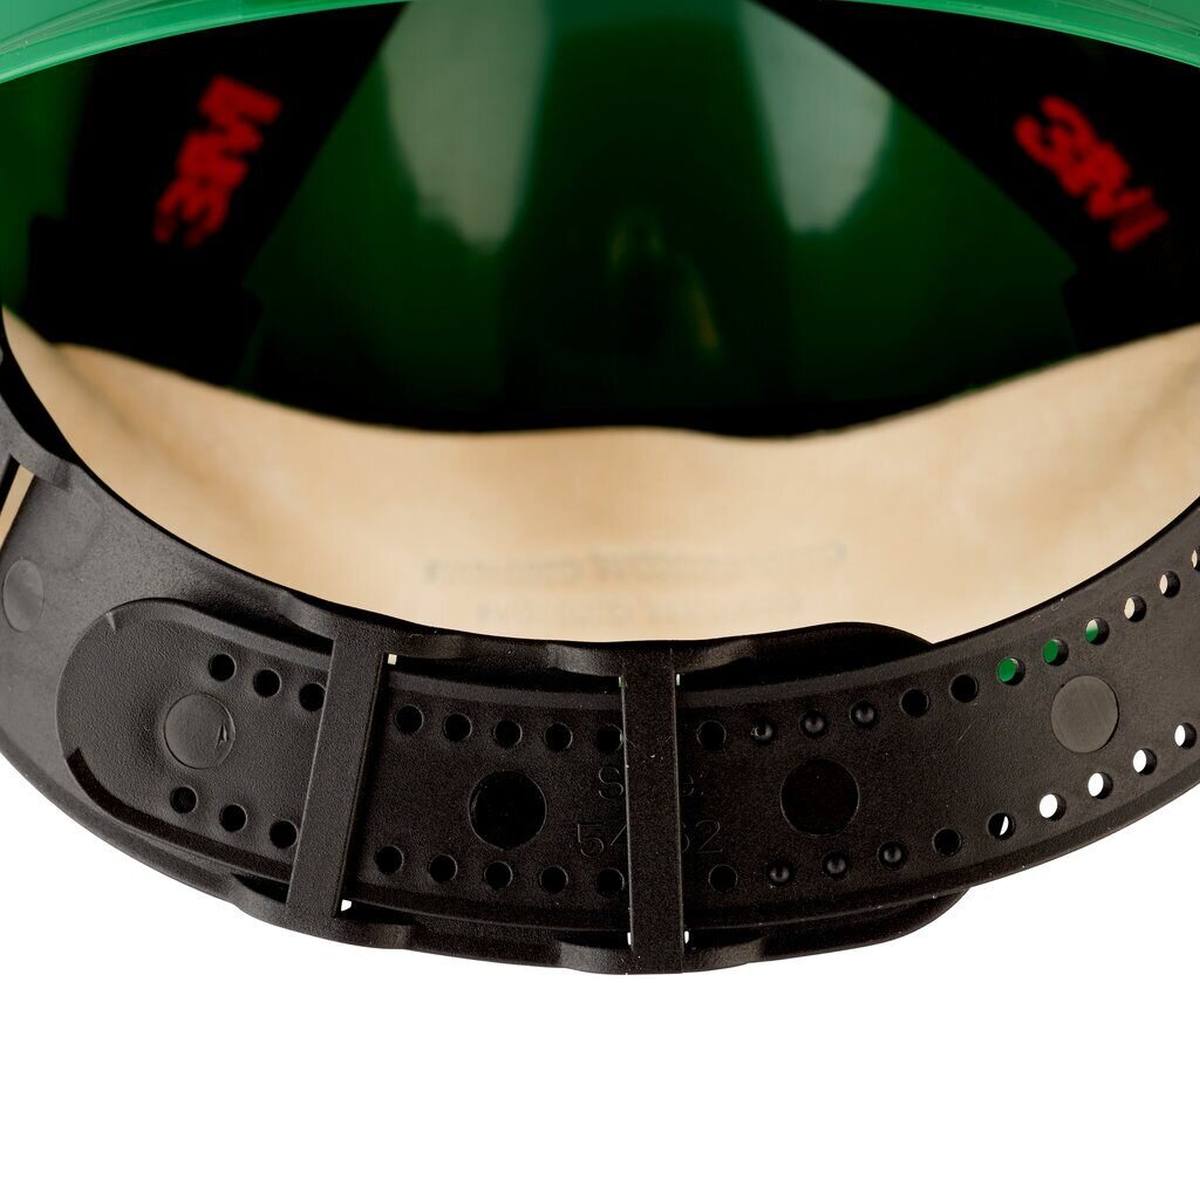 Elmetto di sicurezza 3M G3000 G30DUG in verde, ventilato, con uvicatore, pinlock e fascia antisudore in pelle